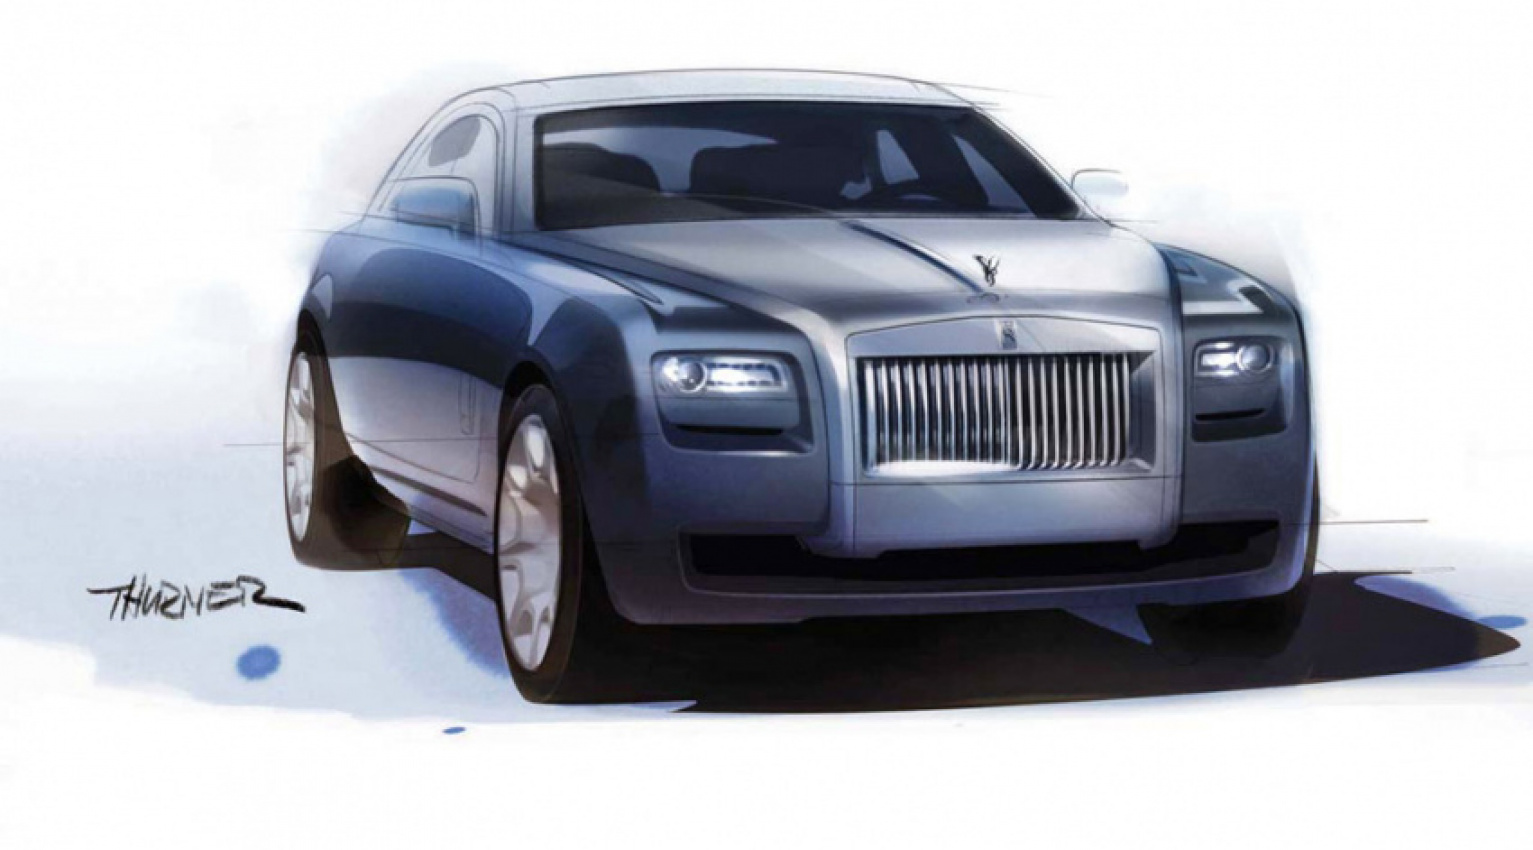 autos, cars, review, rolls-royce, 2000s cars, concept, luxury cars, rolls-royce model in depth, 2009 rolls-royce 200ex concept